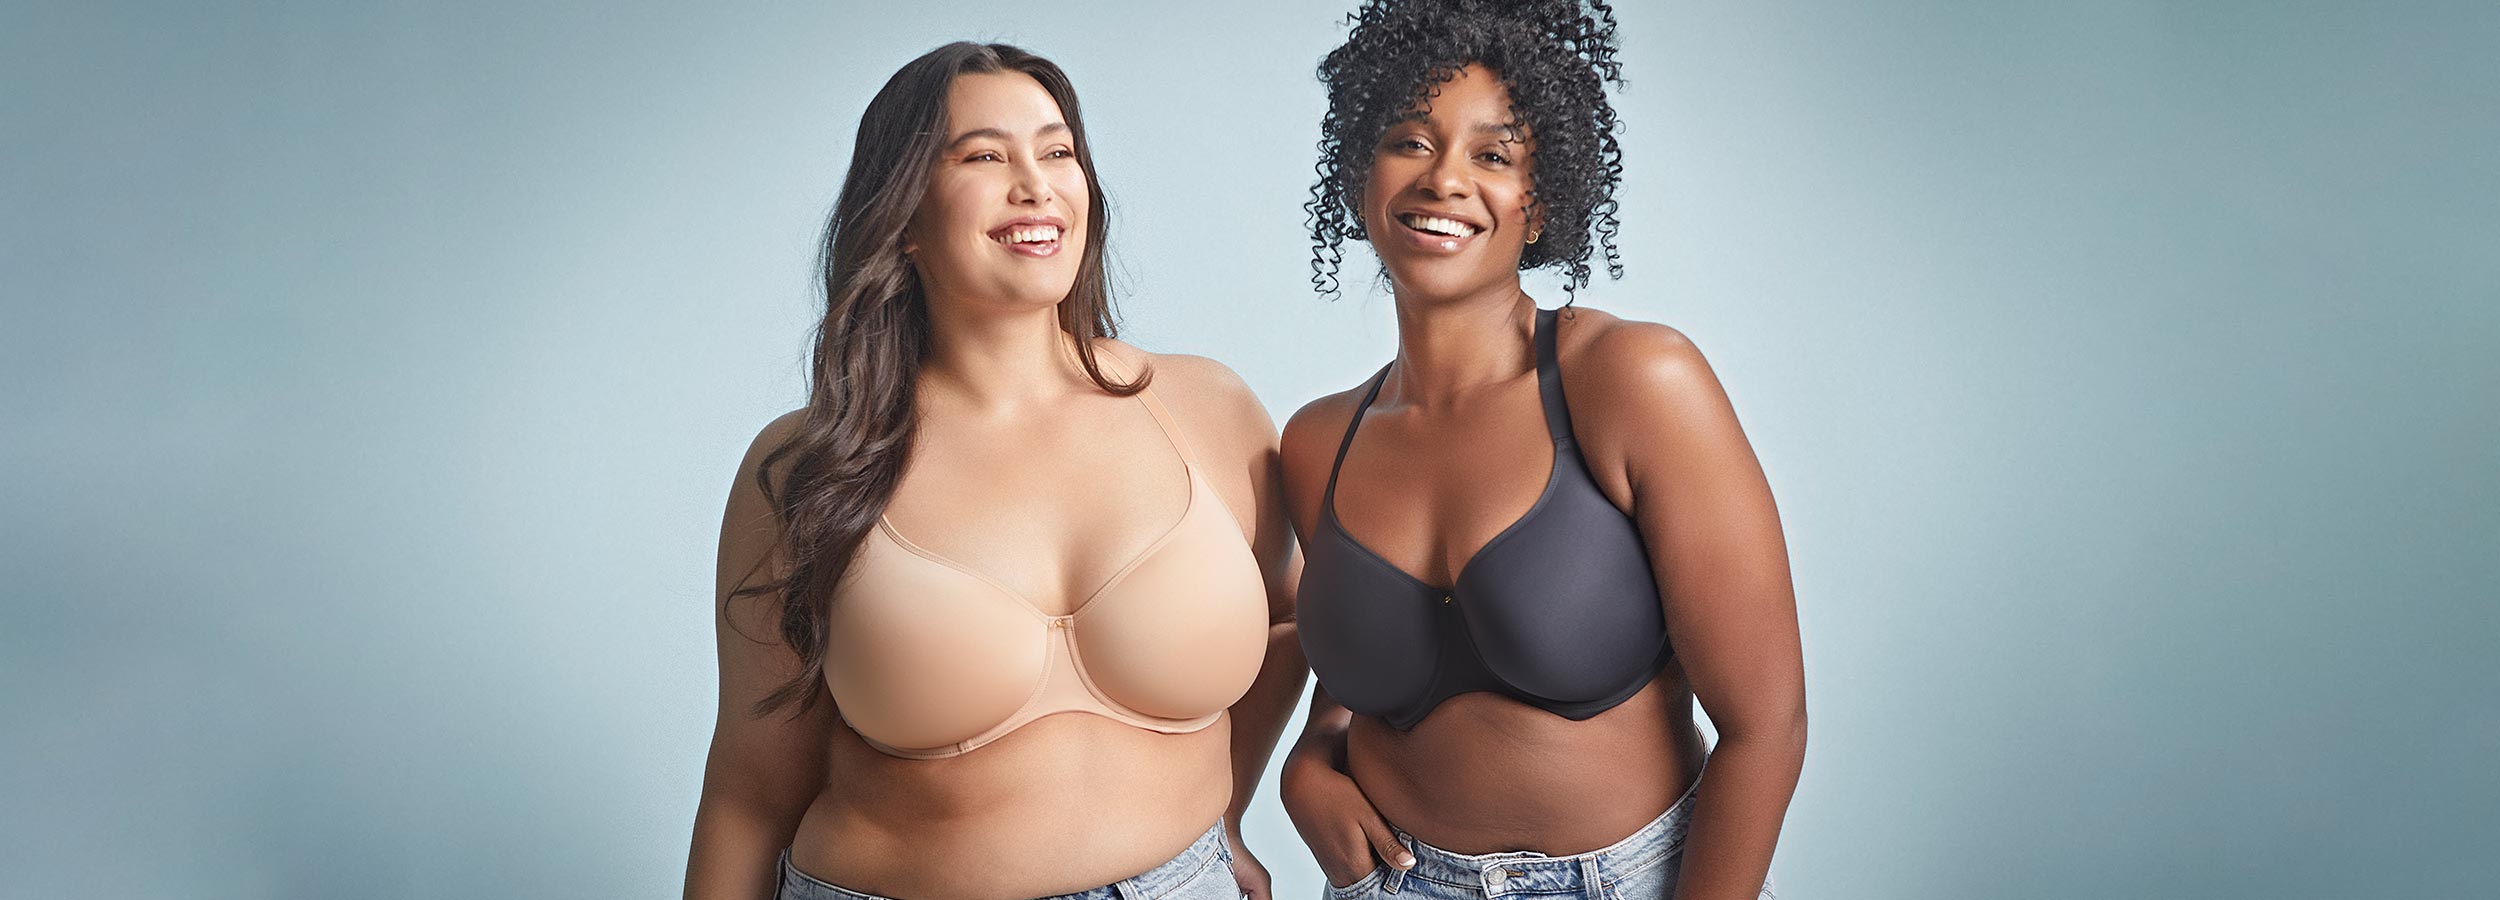 Two women in bras